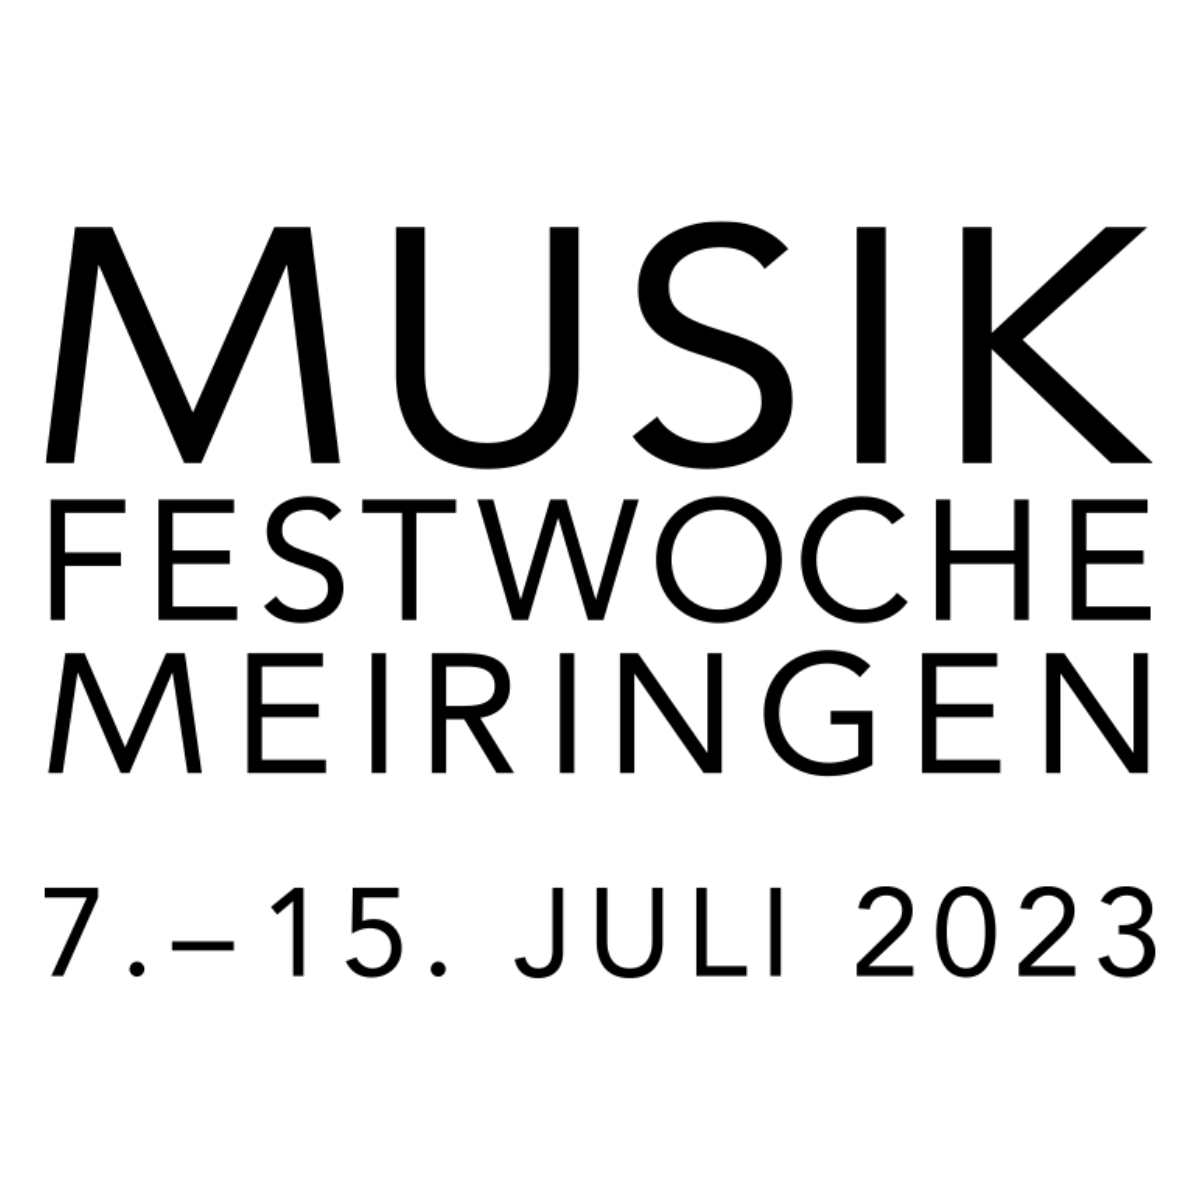 Musikfestwoche Meiringen 7.-15.Juli 2023